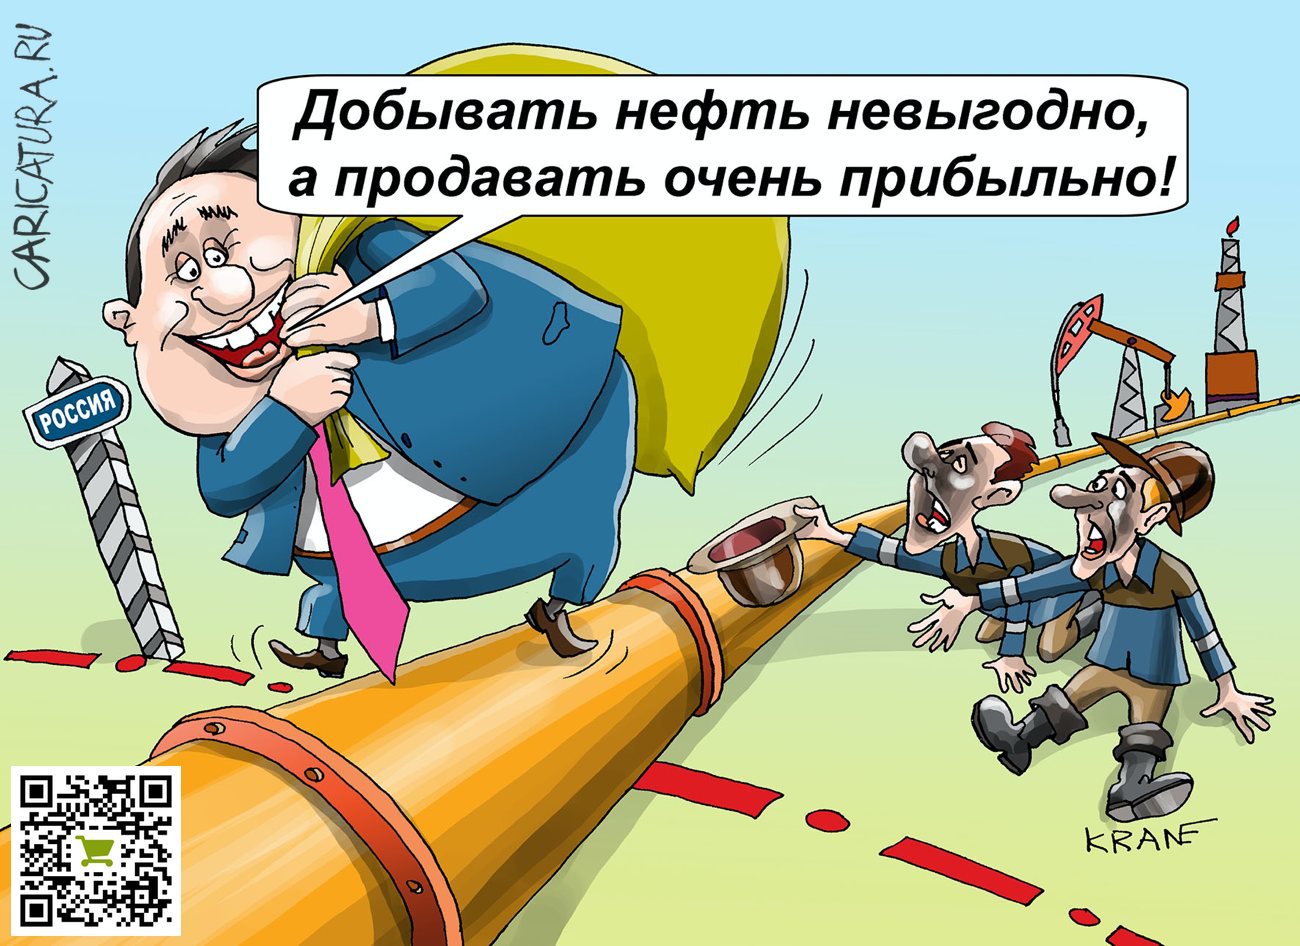 Карикатура "Грабеж средь белого дня", Евгений Кран